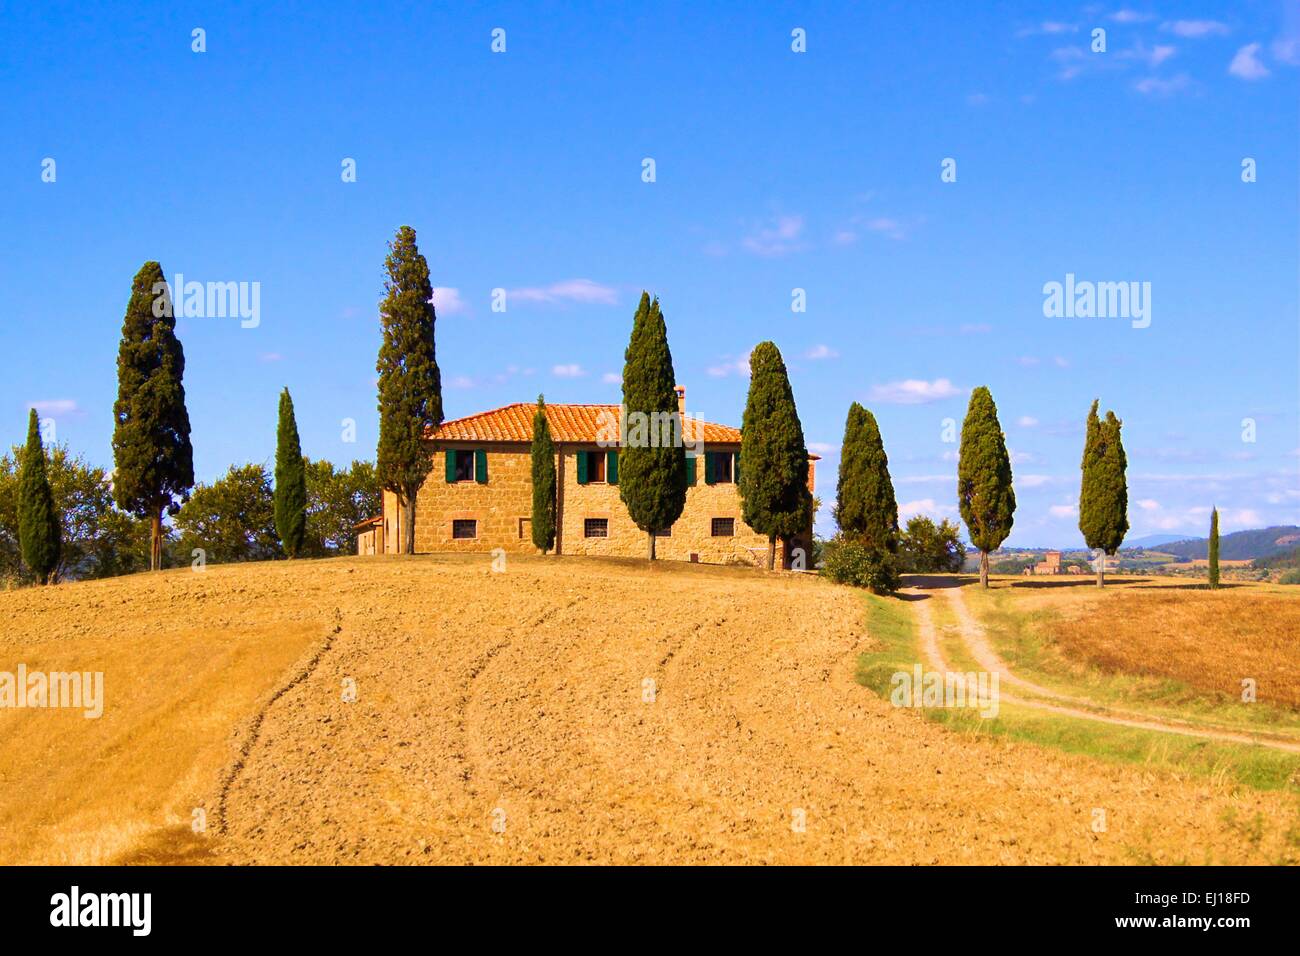 Klassische toskanische Landschaft mit Steinhaus und Zeile von Zypressen, Italien Stockfoto